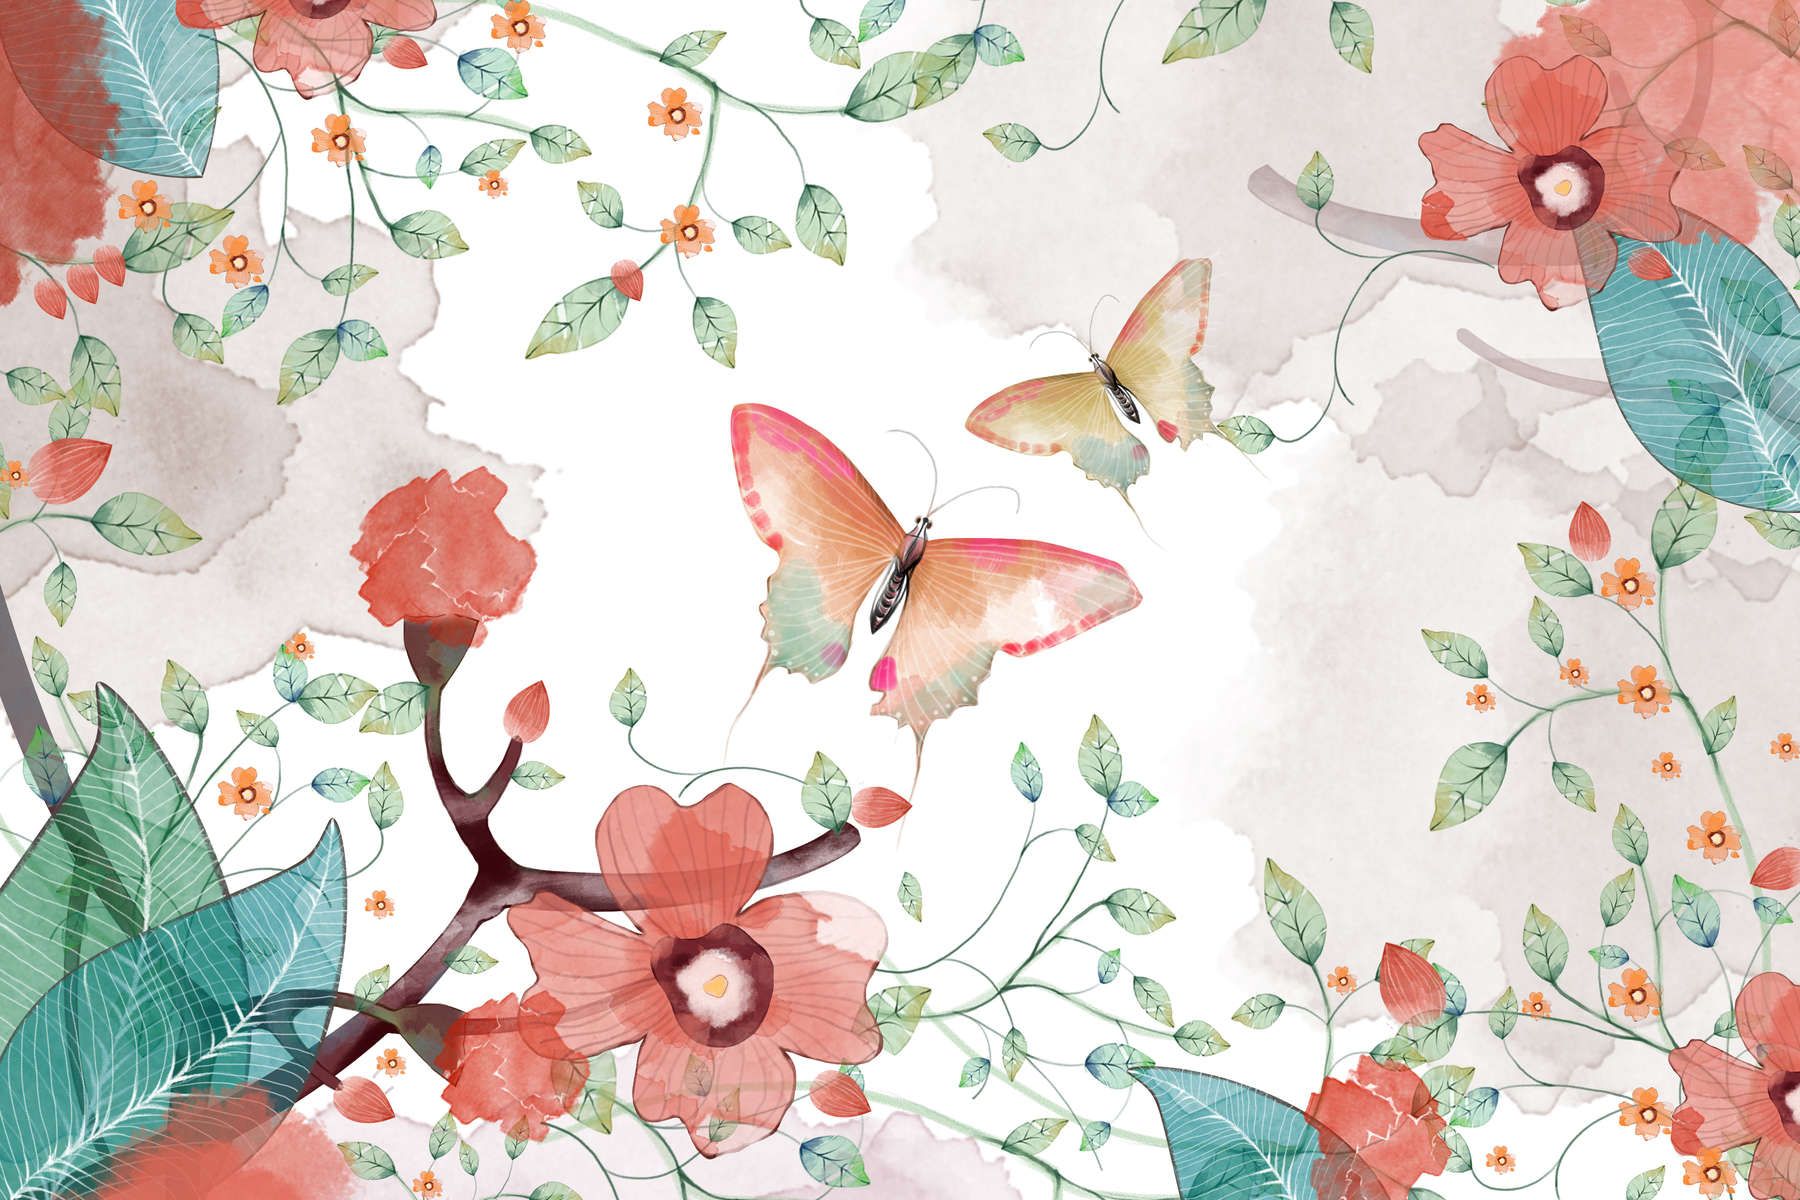             papiers peints à impression numérique floral avec feuilles et papillons - intissé lisse & légèrement brillant
        